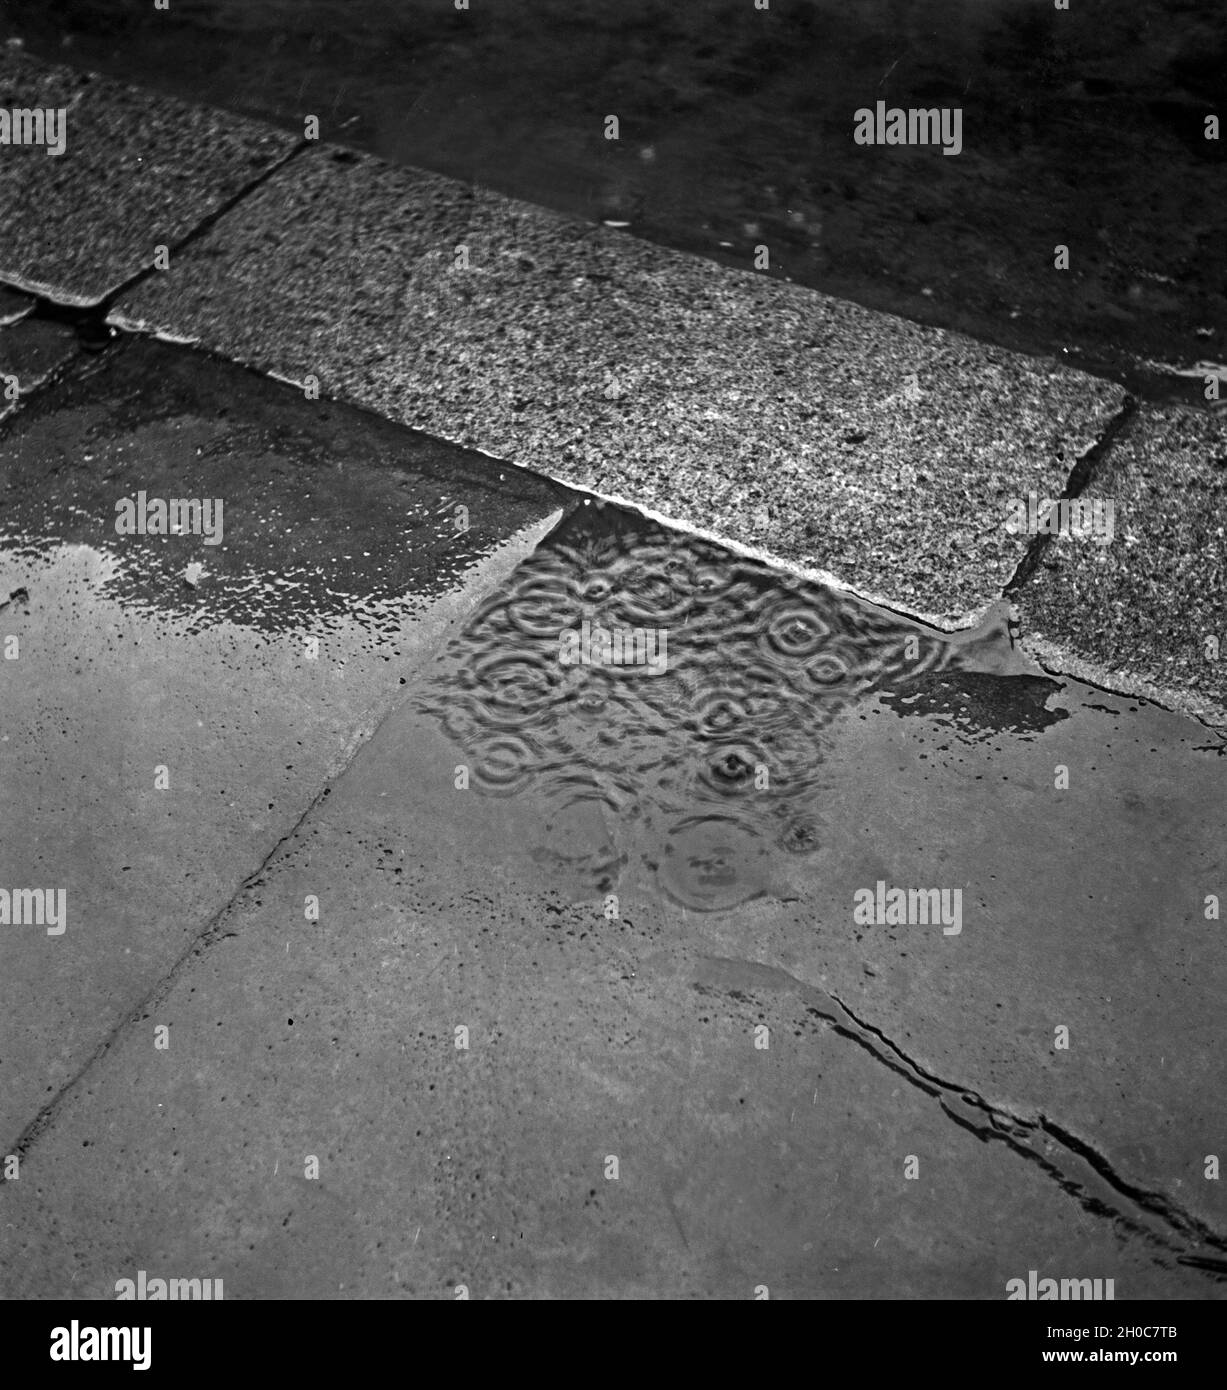 Regentropfen fallen in eine Pfütze auf einem Bürgersteig in Braunschweig, Deutschland 1930er Jahre. Raindrops falling into a puddle at the pavement of Braunschweig, Germany 1930s. Stock Photo